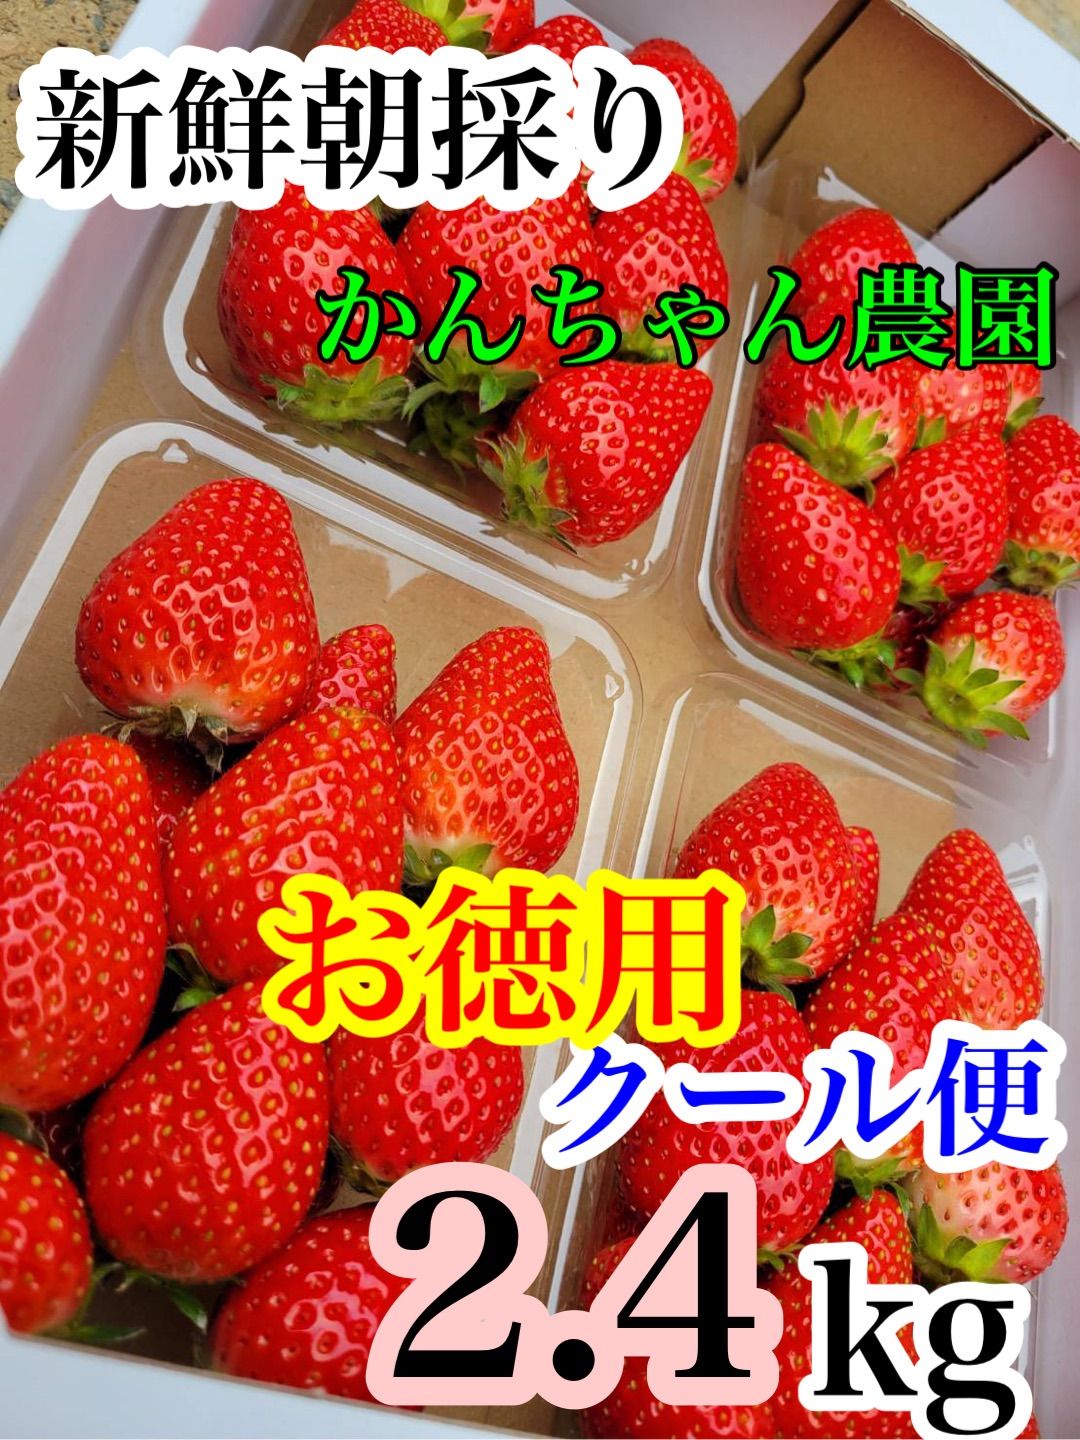 「新鮮朝採り」クール便❗️2箱かんちゃん農園 甘いいちご